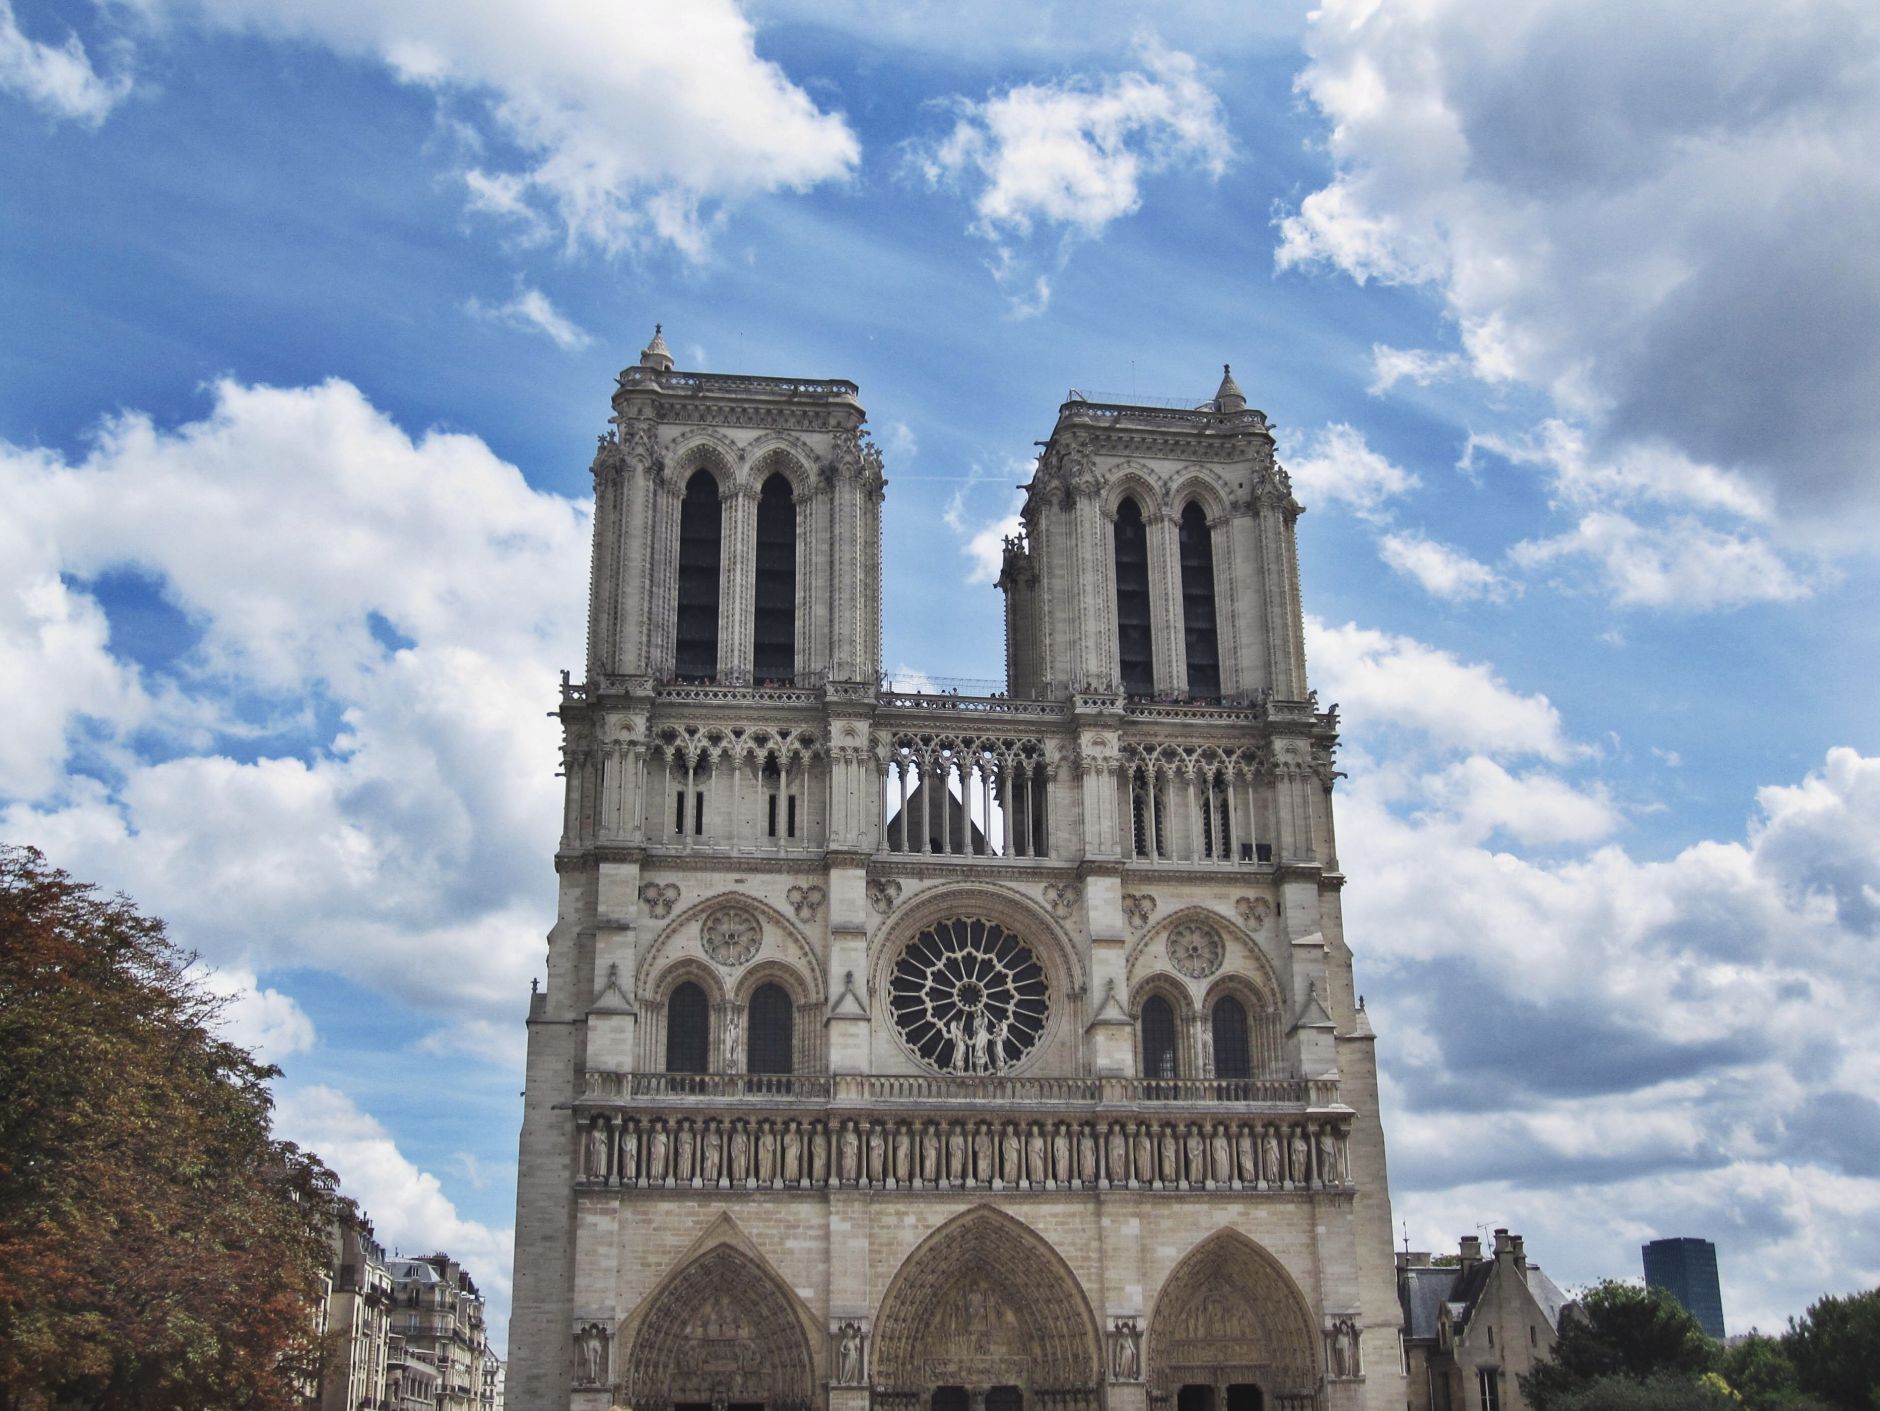 Cathédrale-Notre-Dame-de-Paris-France-Disi-Couture-01